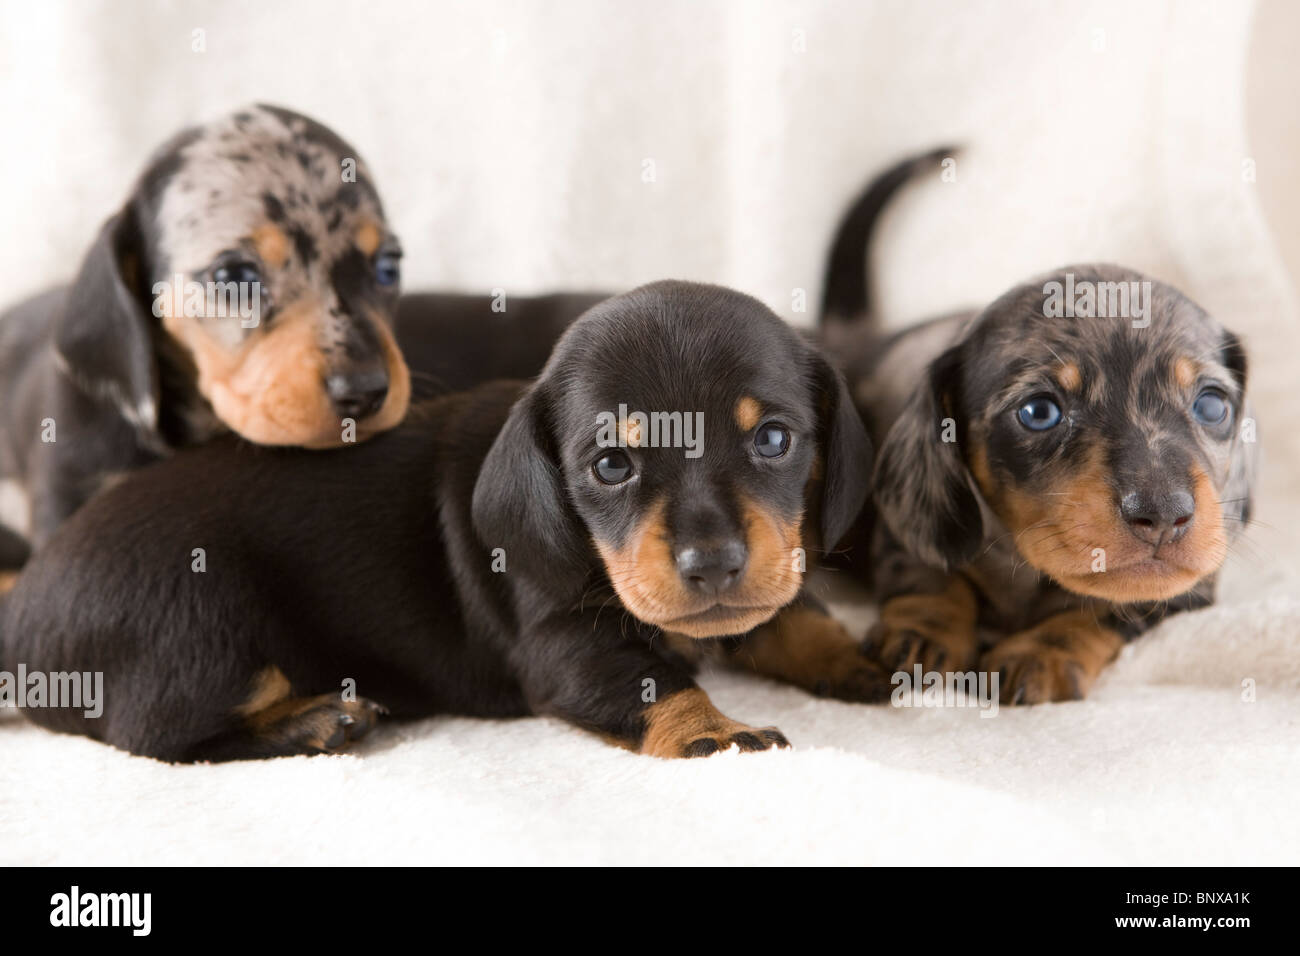 4 week old dachshund puppies